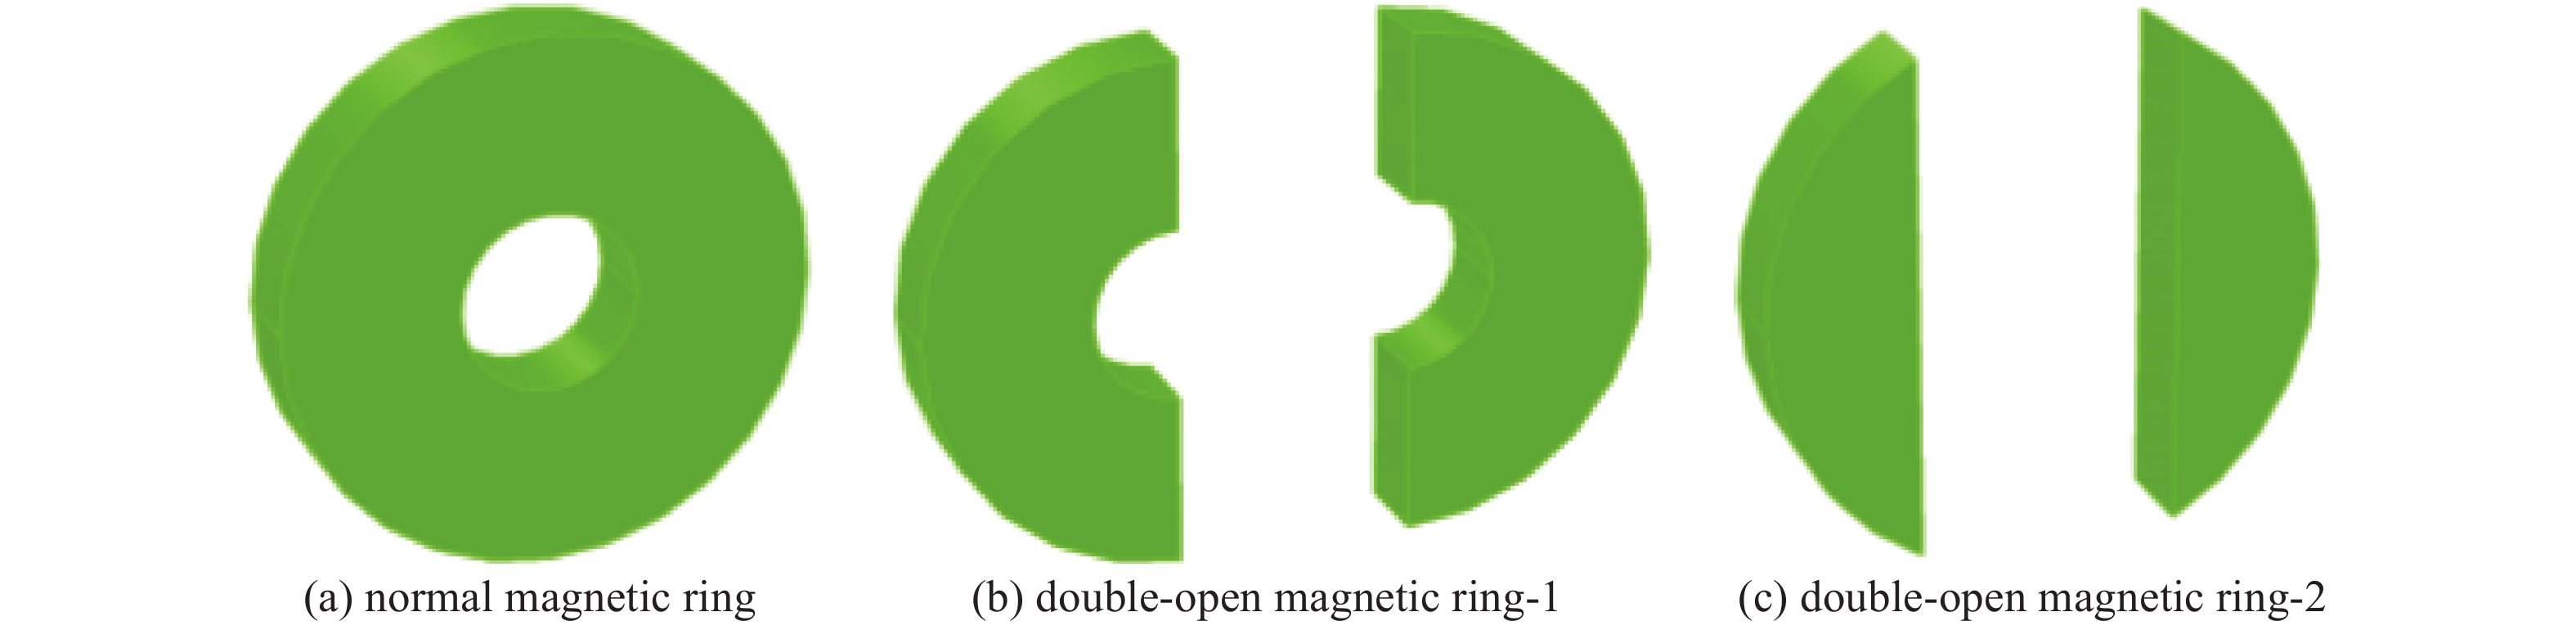 Magnetic ring models